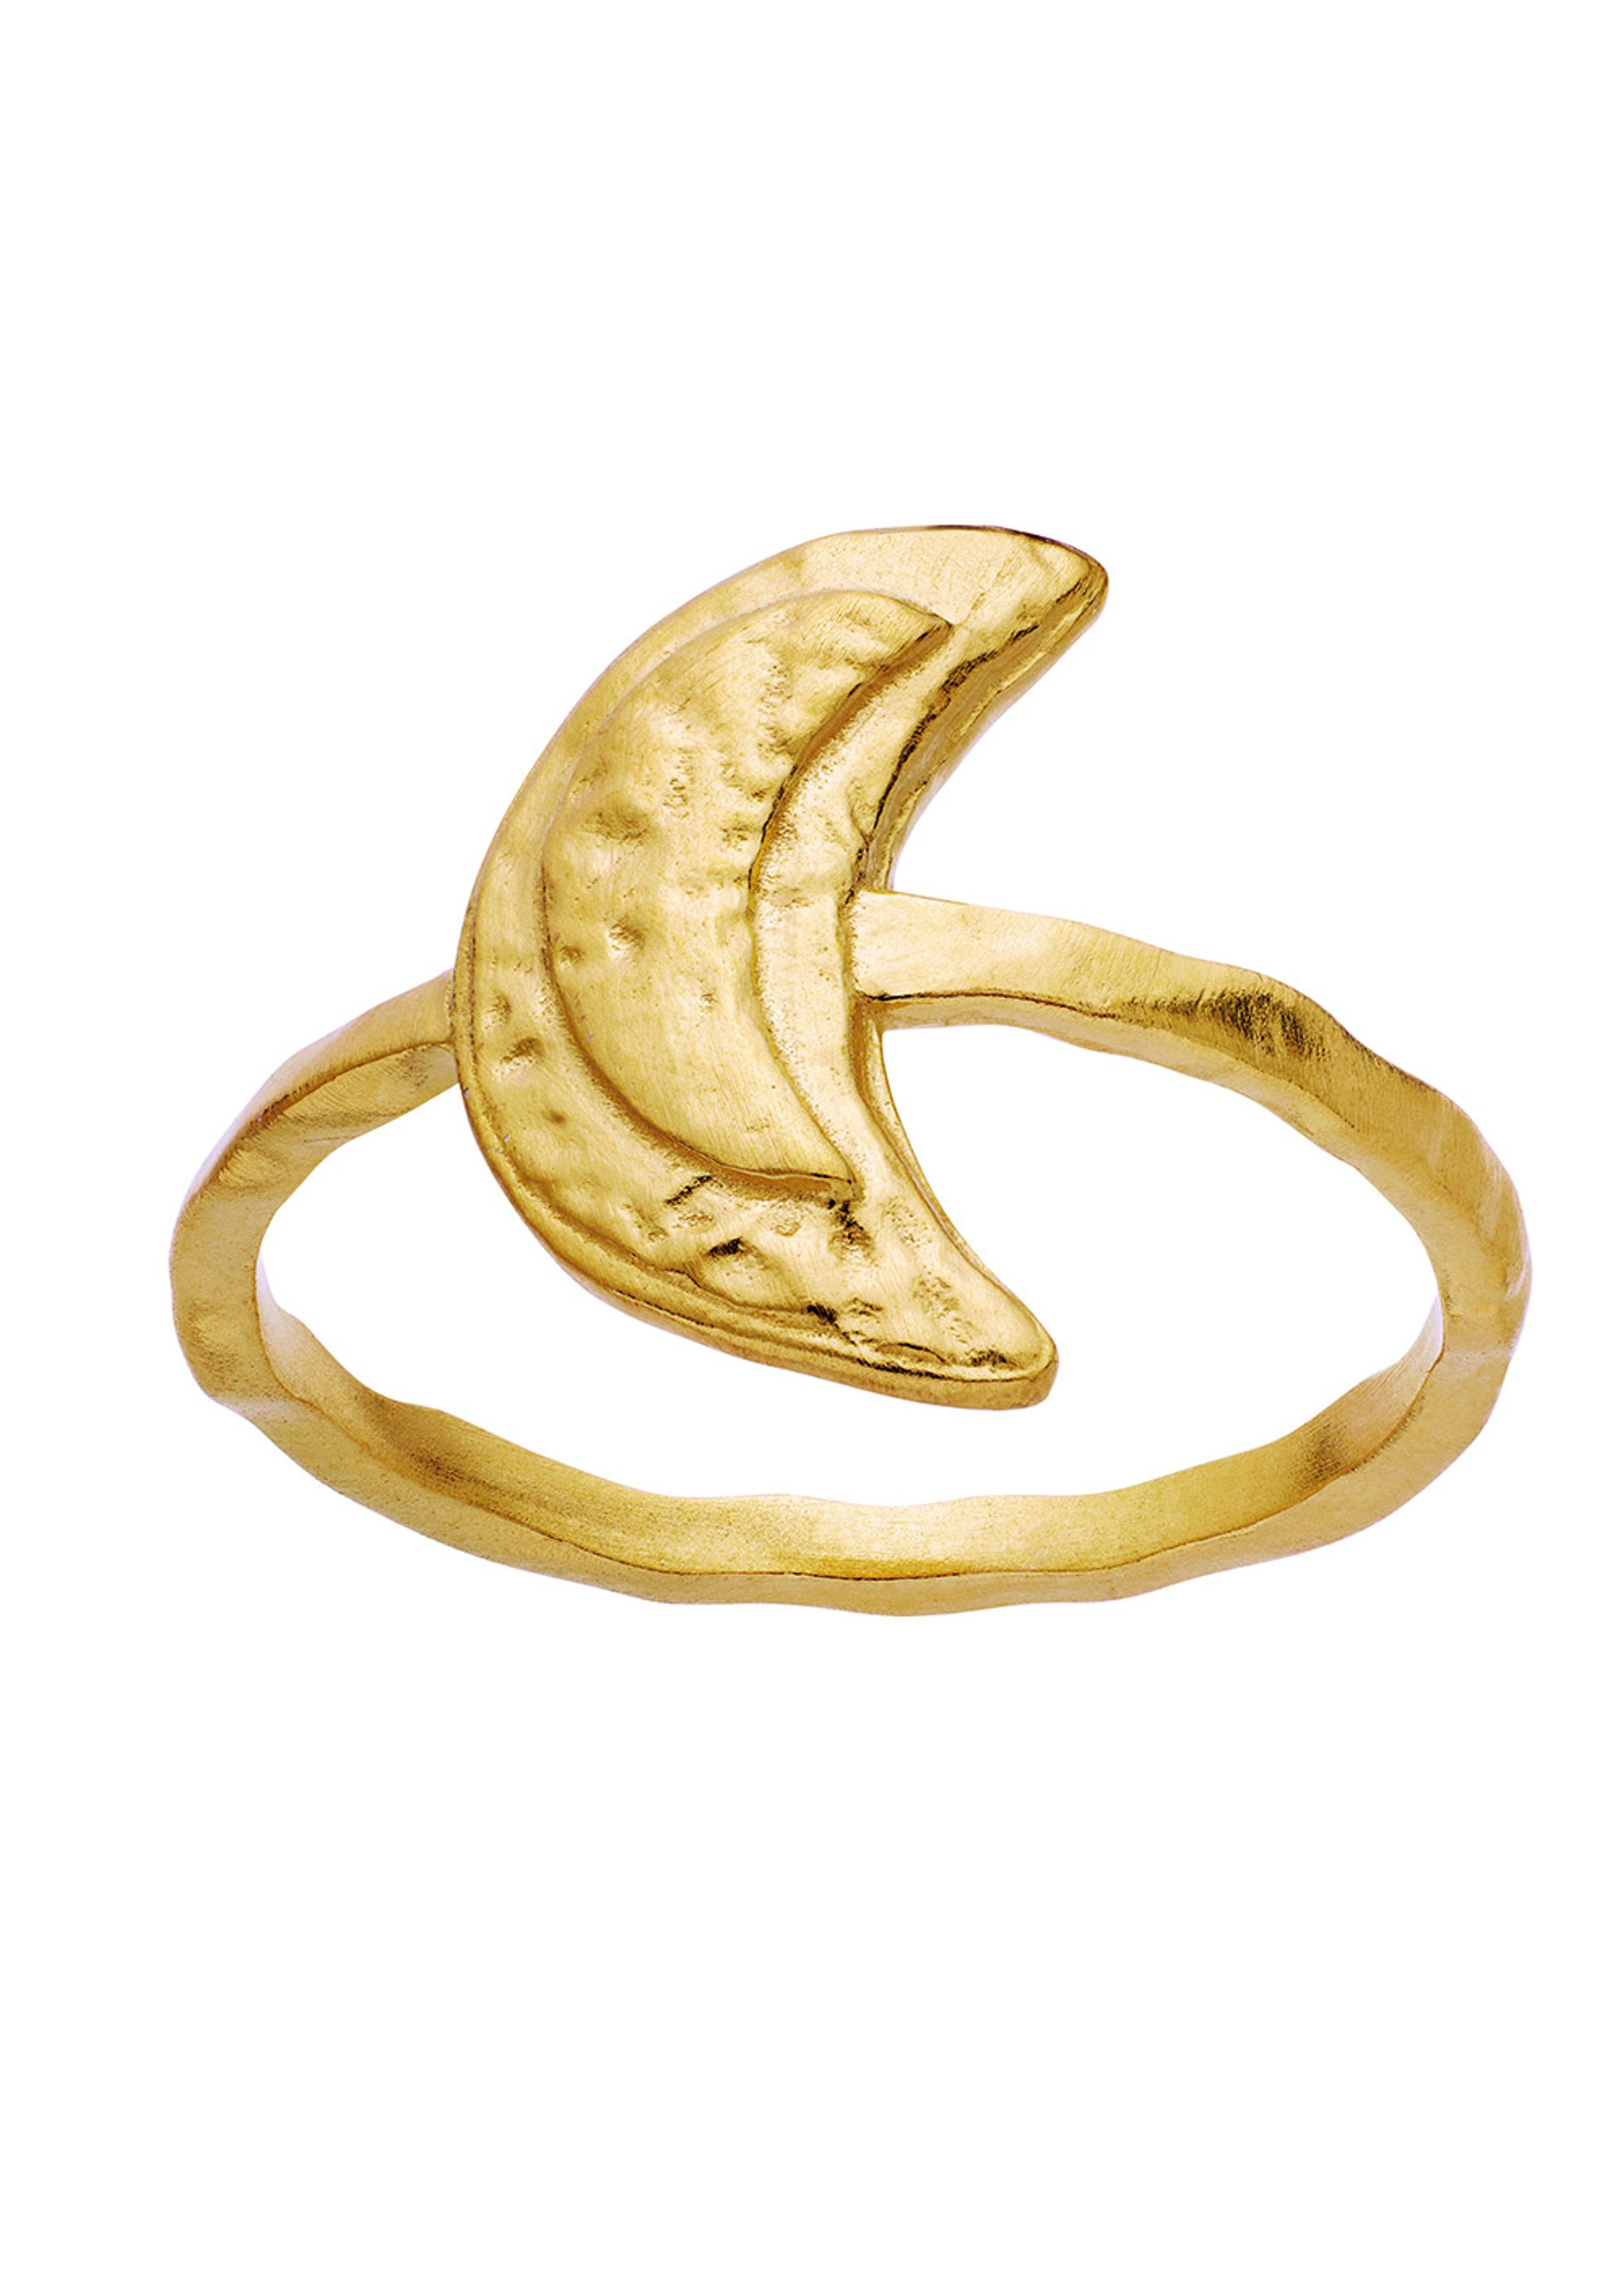 Maanesten - Ring - Jacinta Ring - Gold